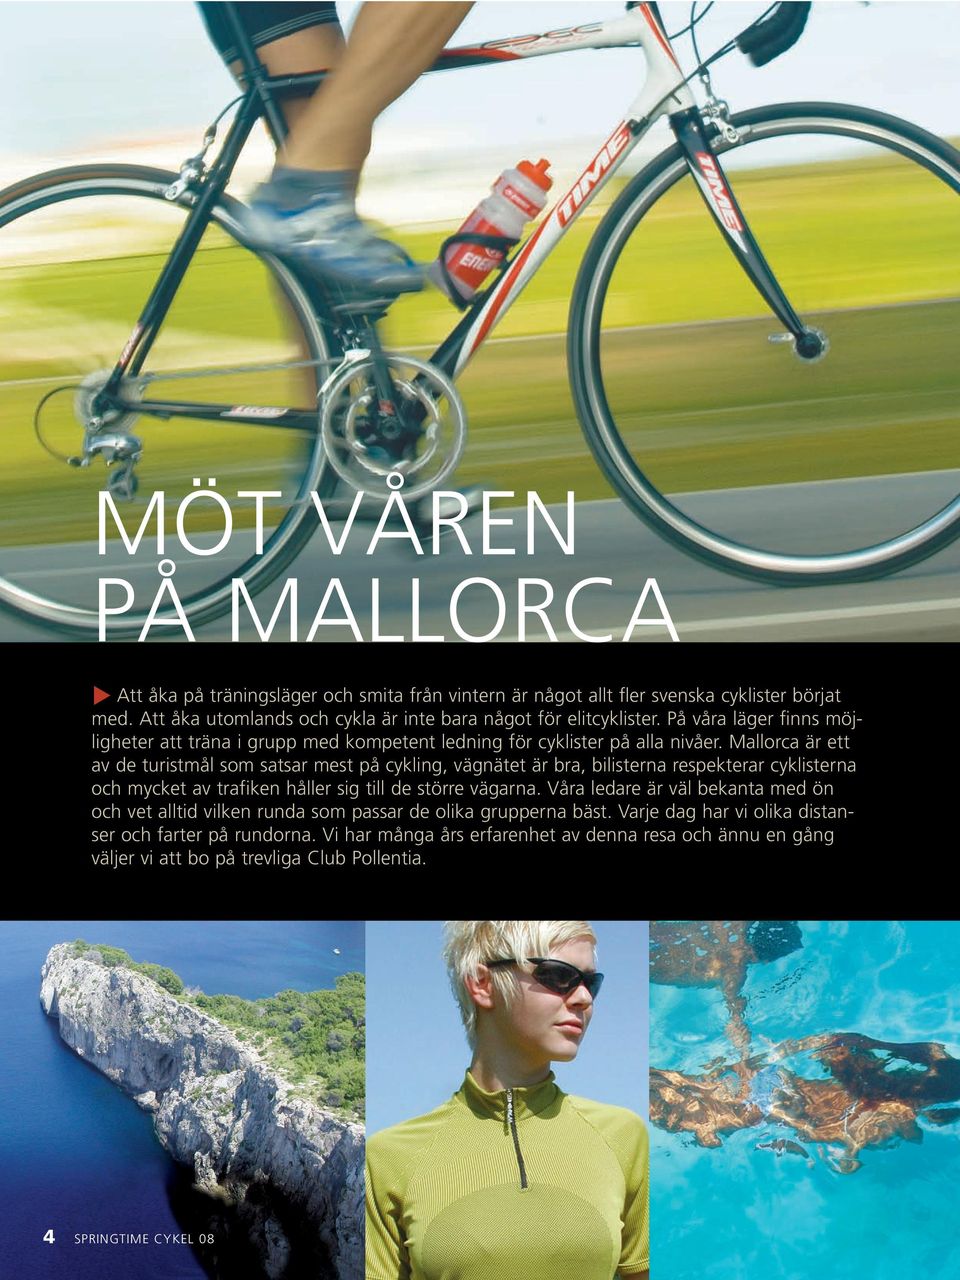 Mallorca är ett av de turistmål som satsar mest på cykling, vägnätet är bra, bilisterna respekterar cyklisterna och mycket av trafiken håller sig till de större vägarna.